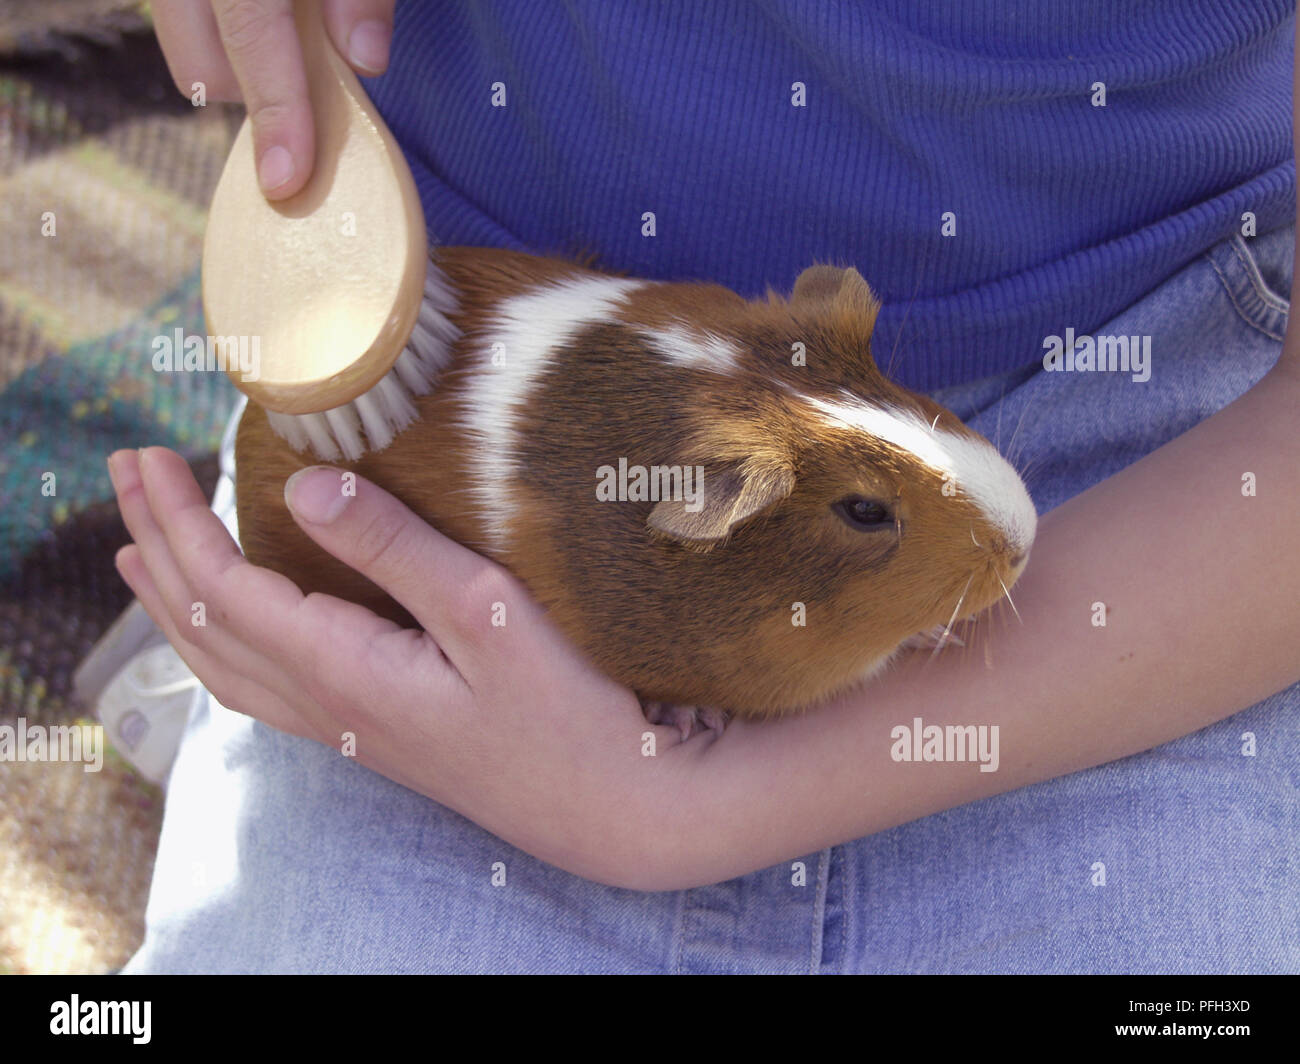 Mädchen, dass Meerschweinchen in ihrem Schoß und Bürsten ihr Fell  Stockfotografie - Alamy